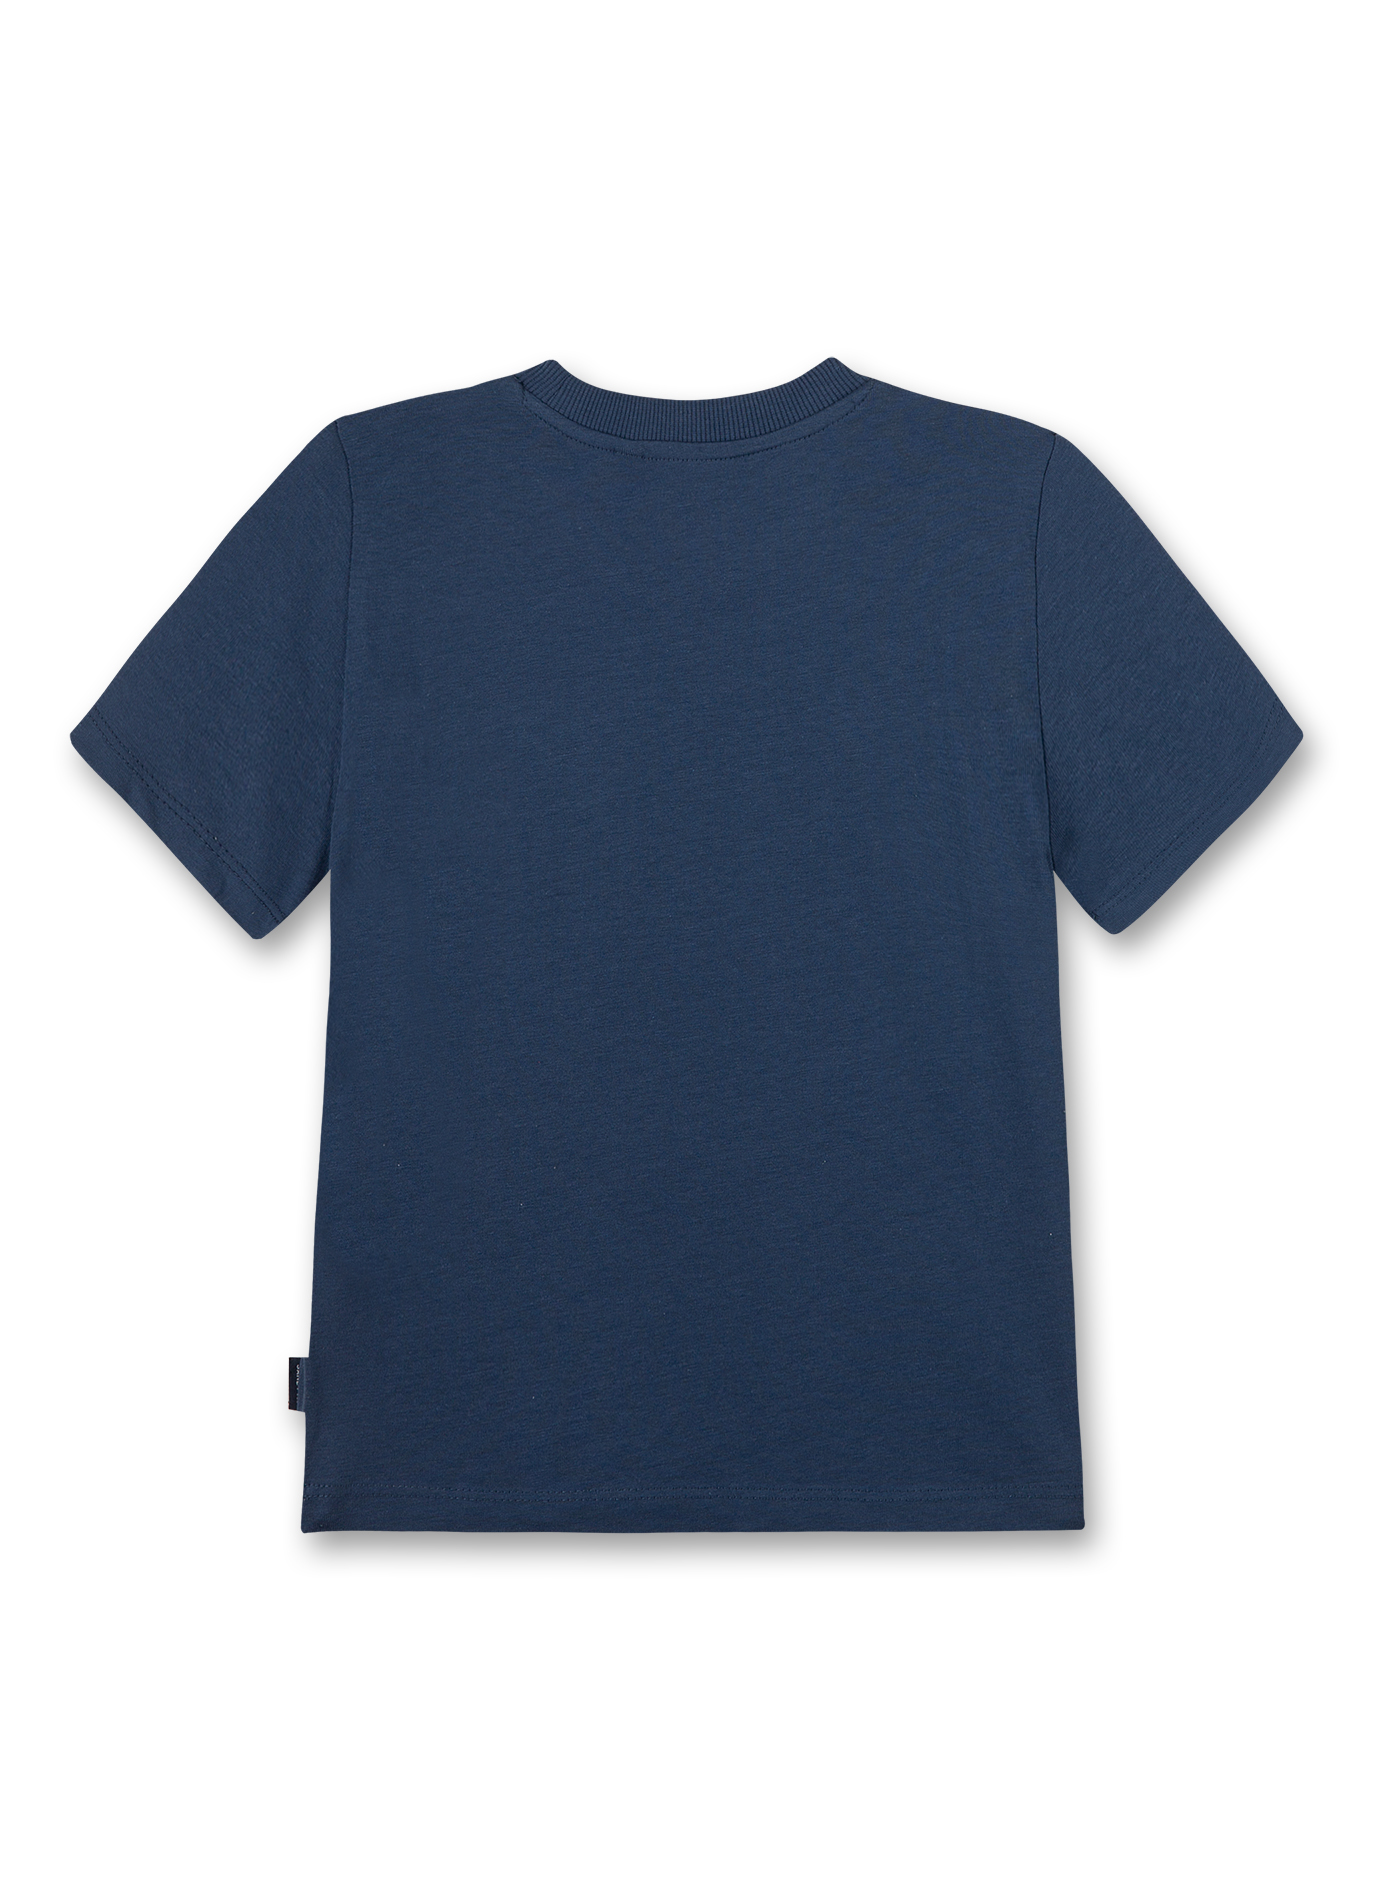 Jungen T-Shirt Blau Music